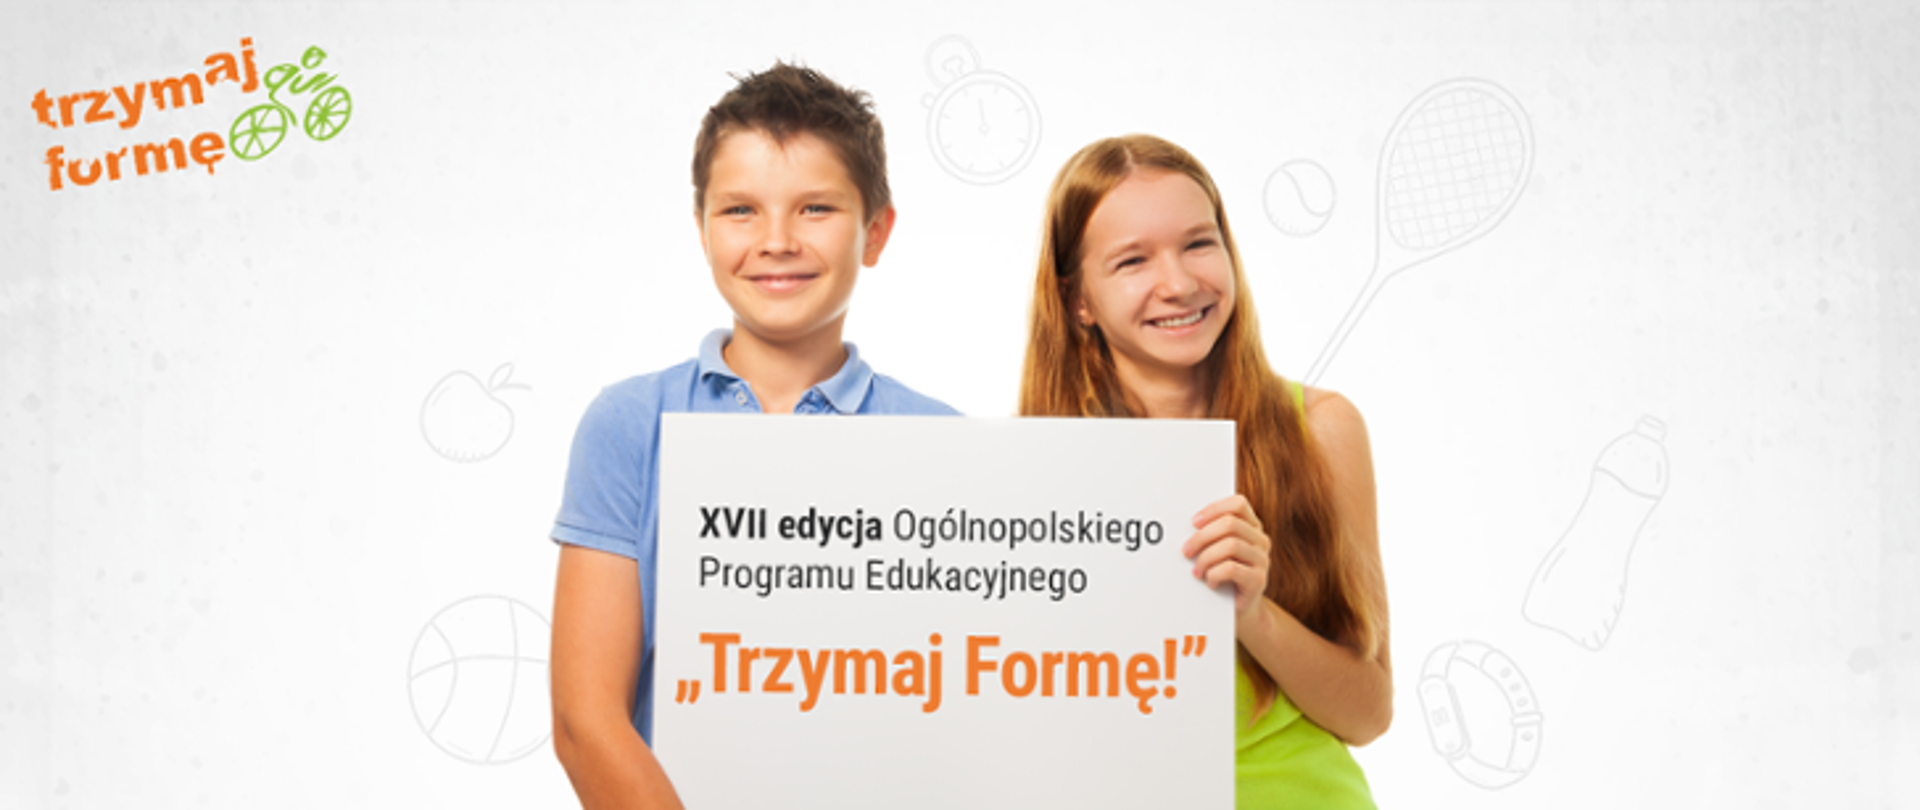 Zdjęcia przedstawia dwójkę dzieci, chłopca i dziewczynkę. Dzieci trzymają białą kartkę z napisem siedemnasta edycja ogólnopolskiego programu edukacyjnego "Trzymaj Formę" 